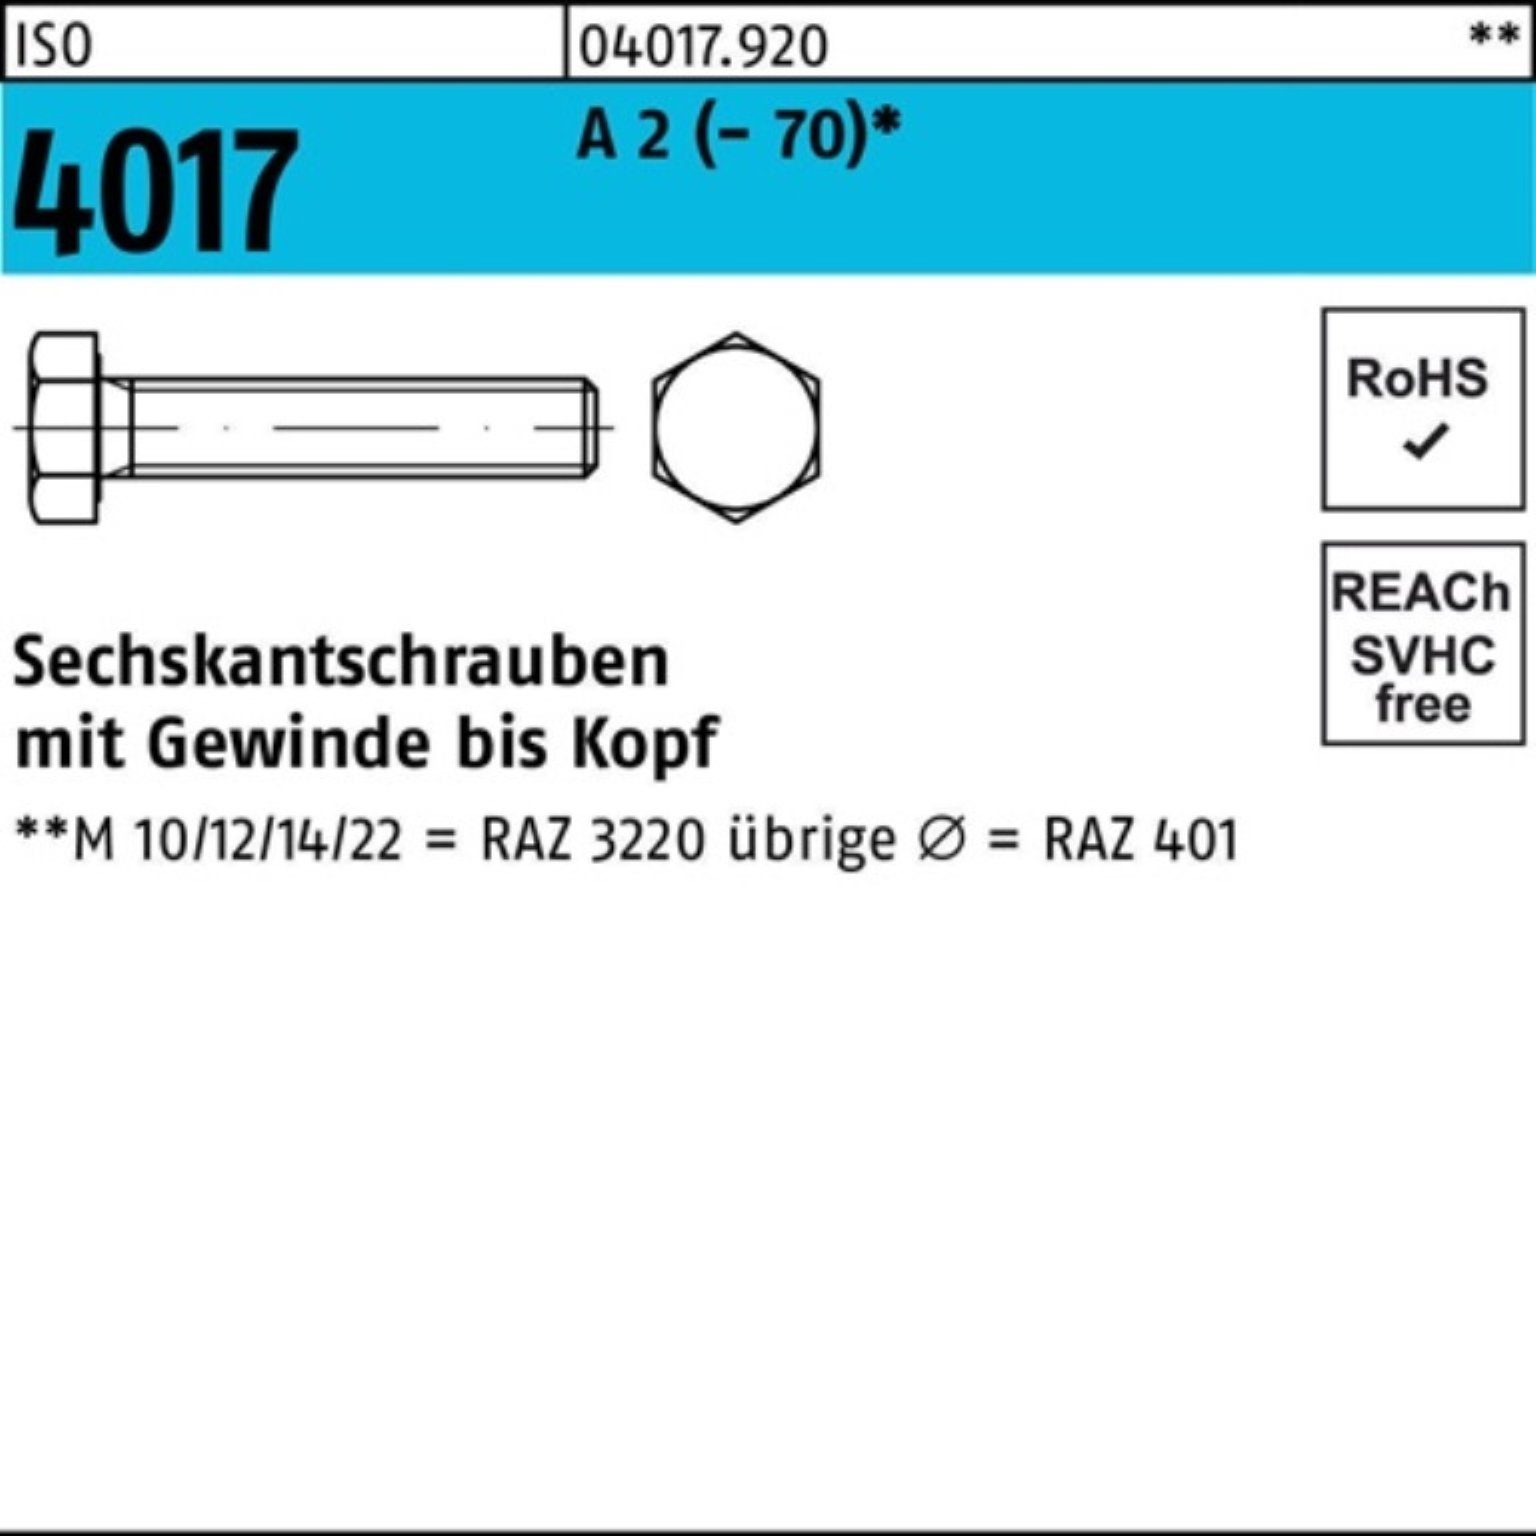 Stück A Sechskantschraube VG ISO 100er Pack M10x 100 Sechskantschraube 40 (70) 2 4017 Bufab